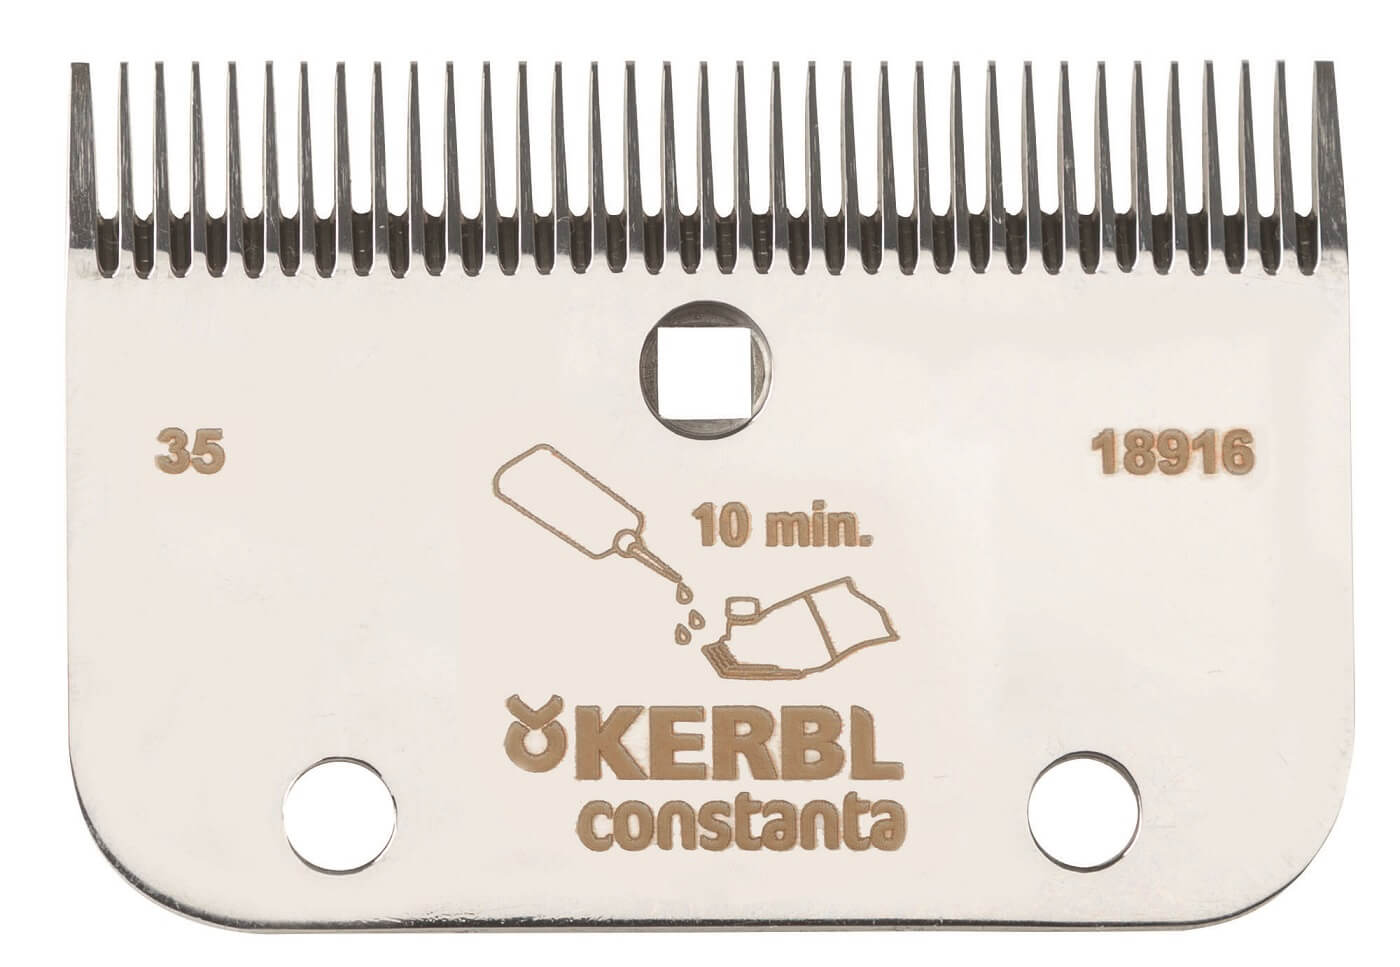 KERBL Schermesser-Set constanta R22 35/24 Zähne